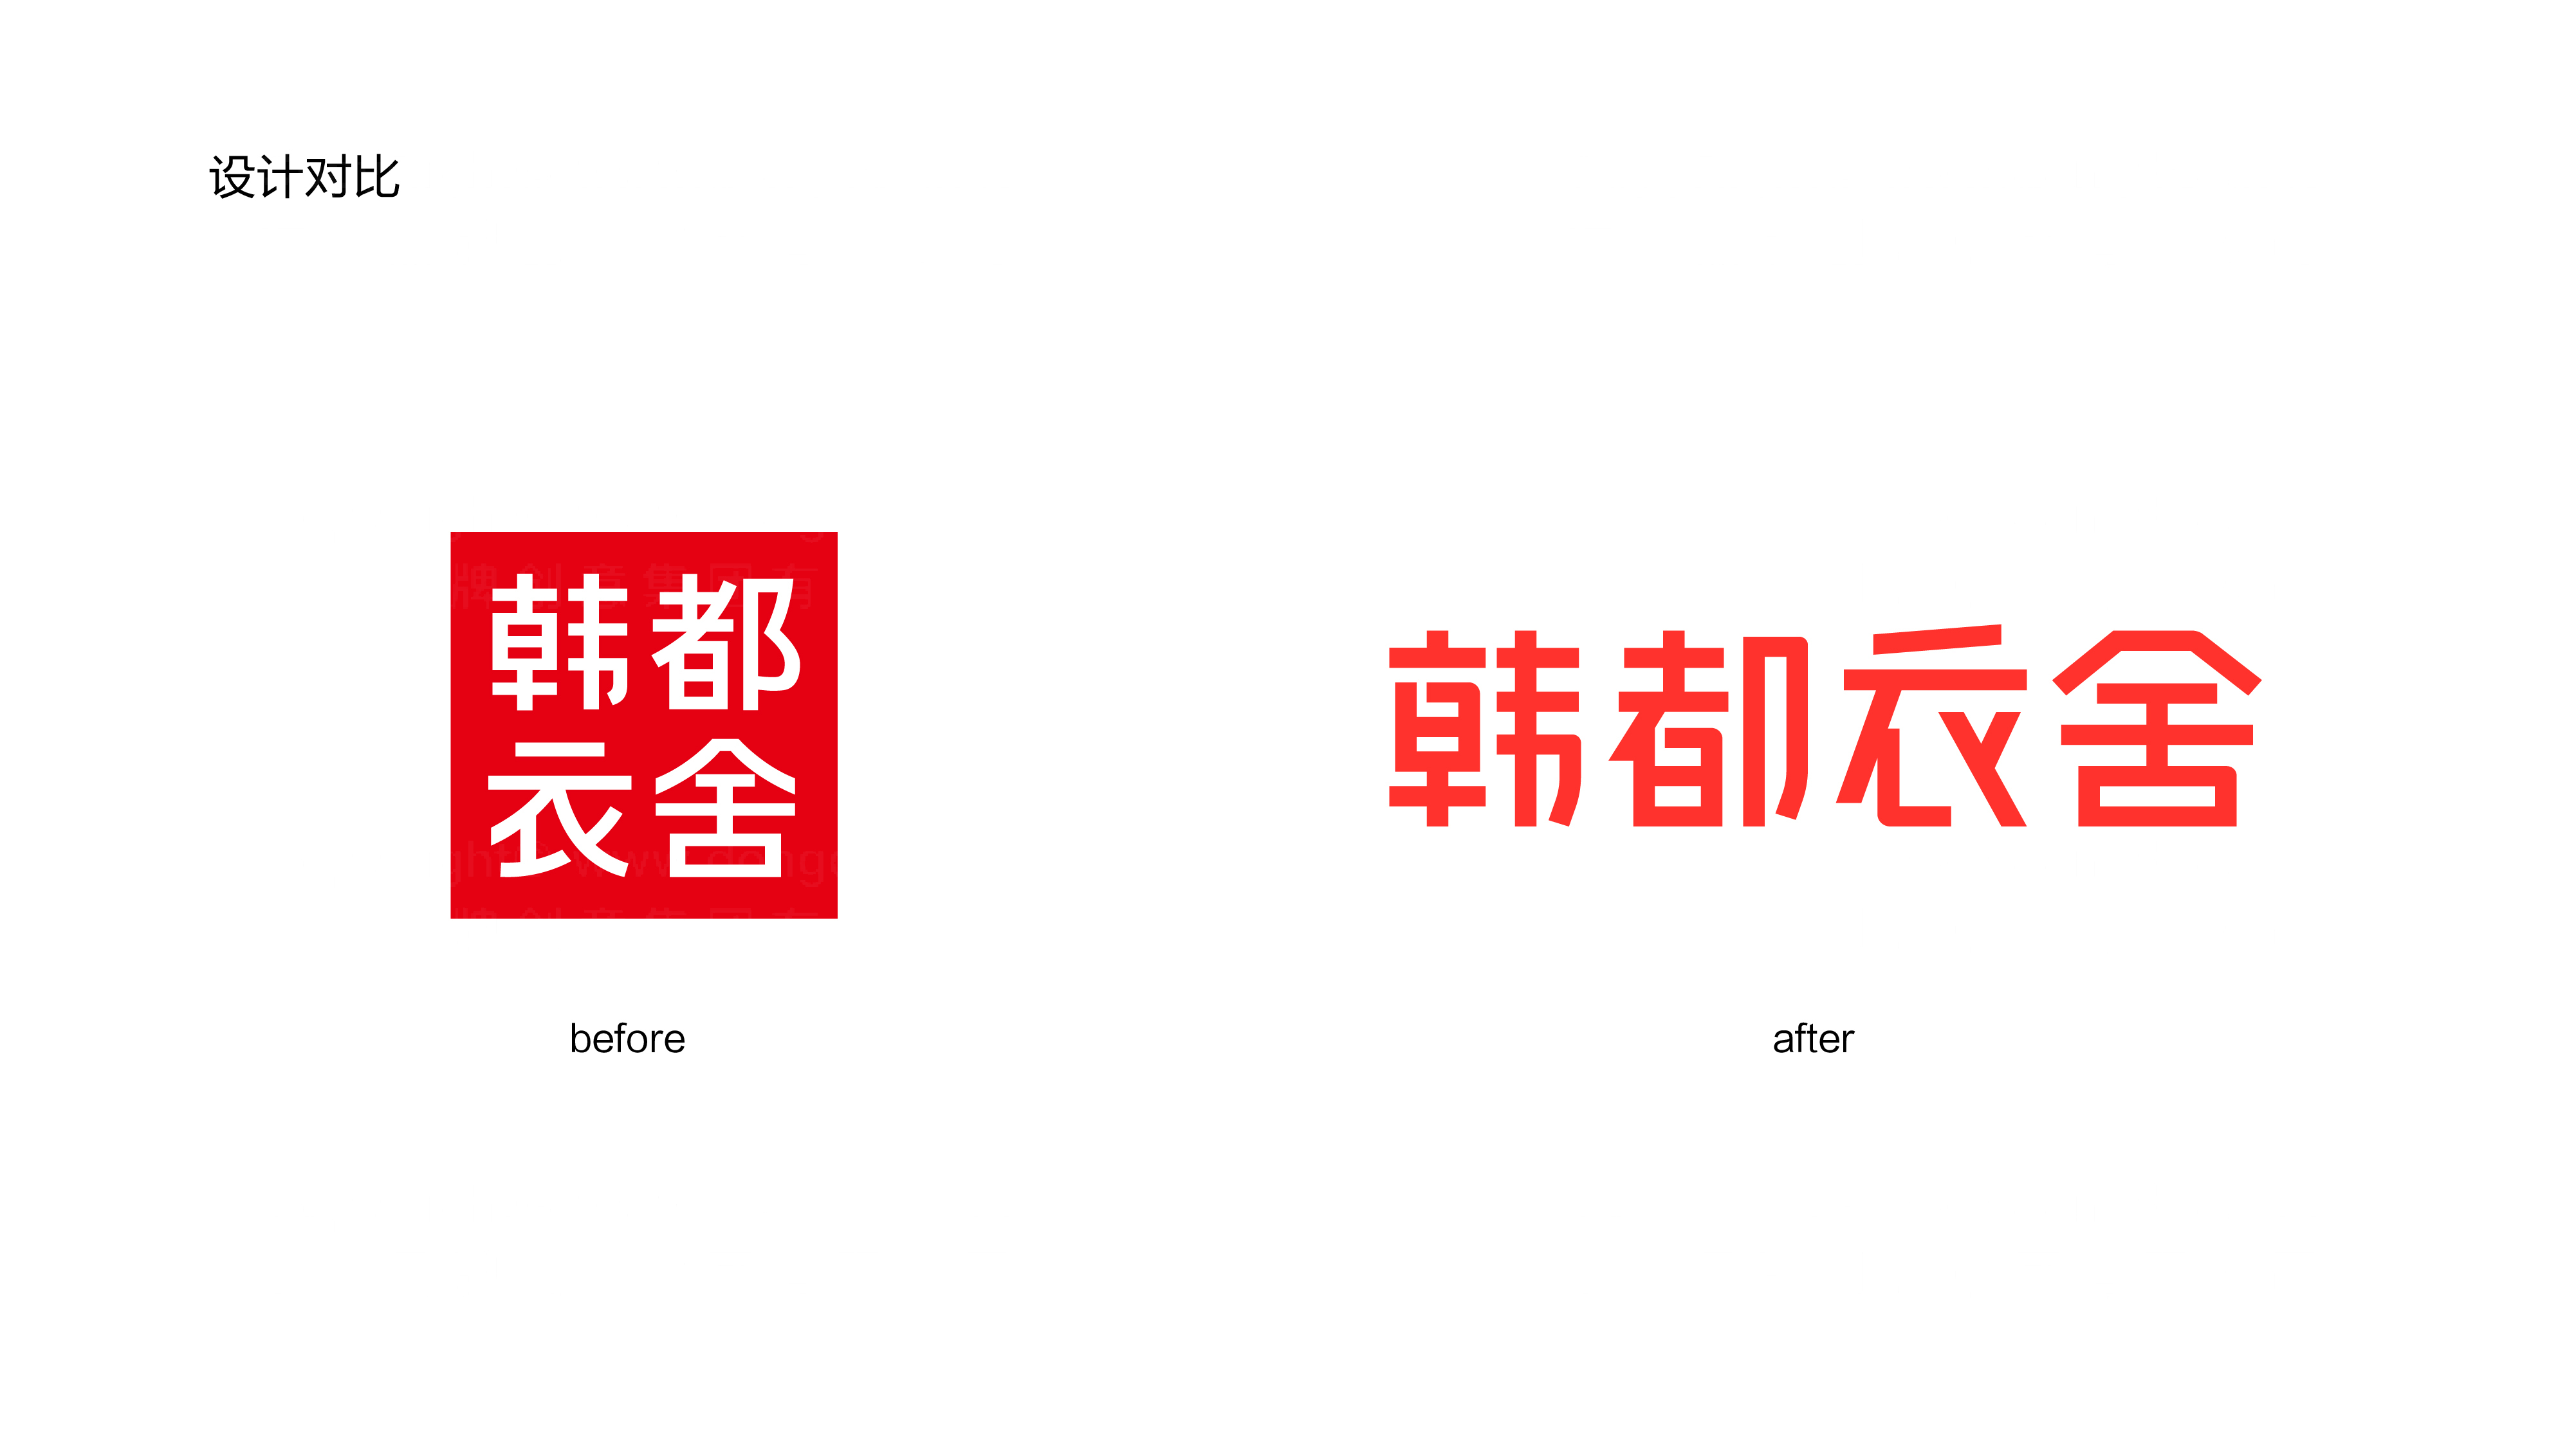 韩都衣舍logo设计图片素材大全案例欣赏